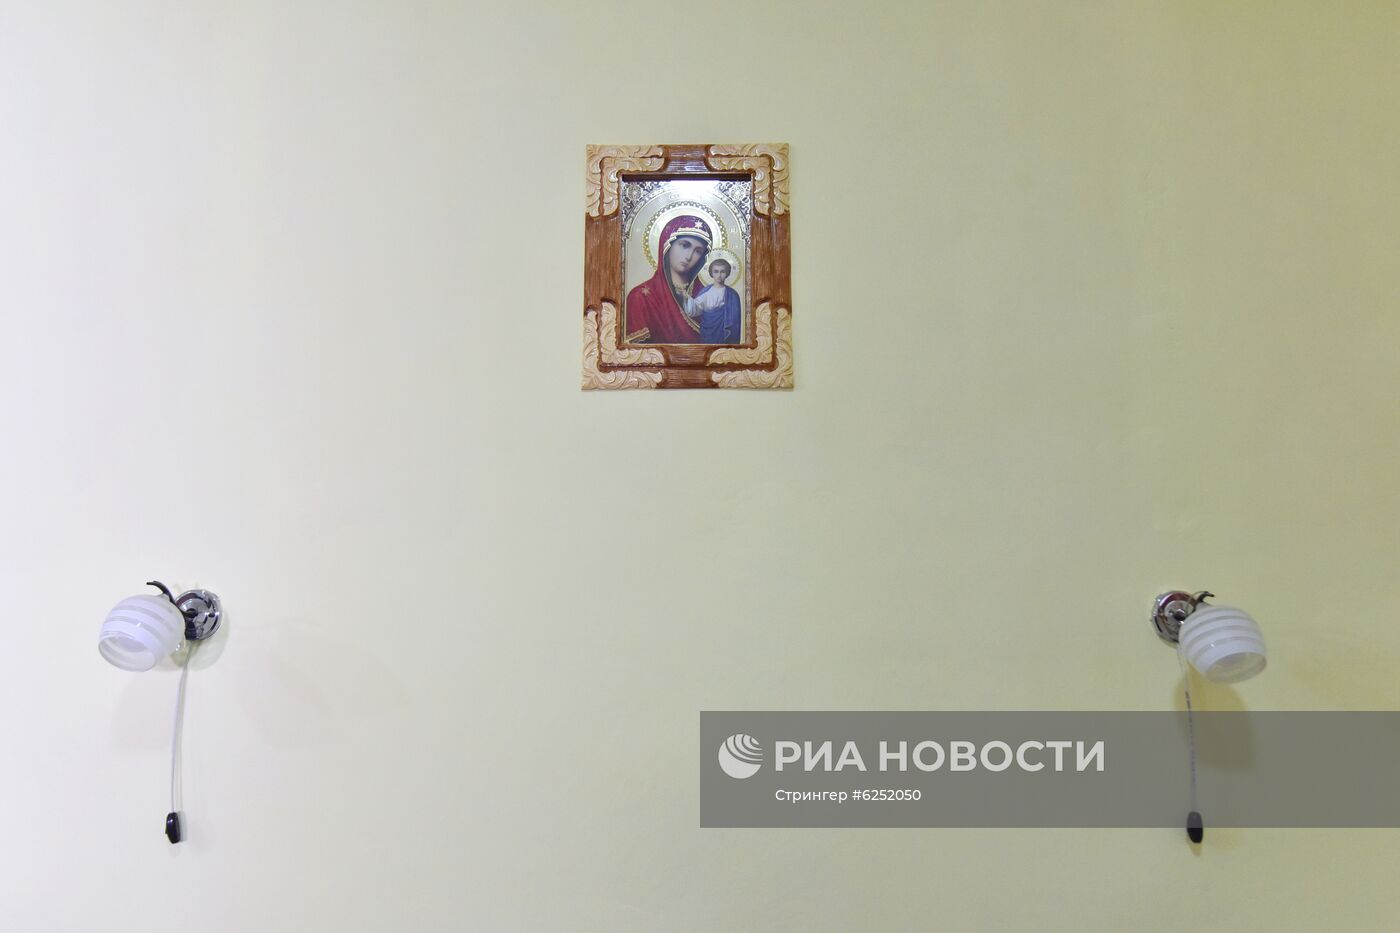 Платные камеры появились в СИЗО на Украине